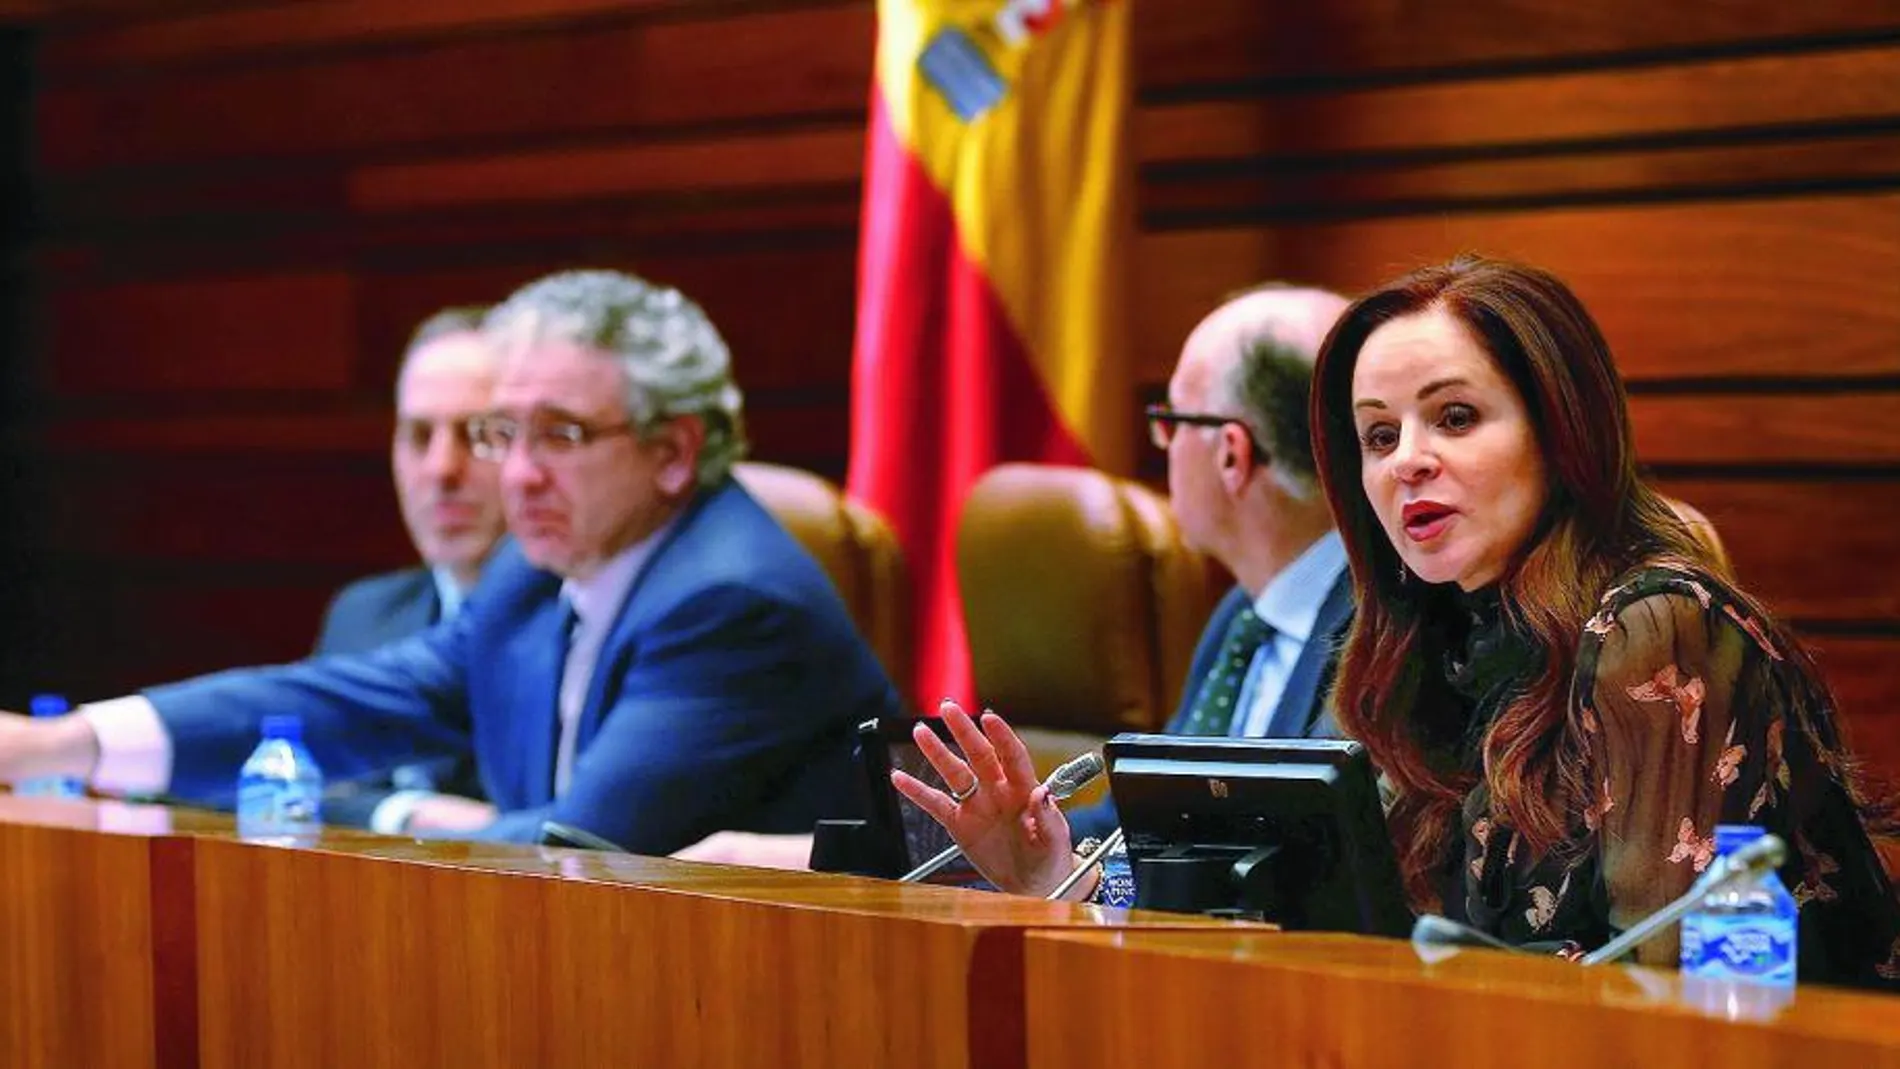 La presidenta del Legislativo autonómico, Silvia Clemente, interviene en uno de los intensos debates de esta primera sesión plenaria del año.